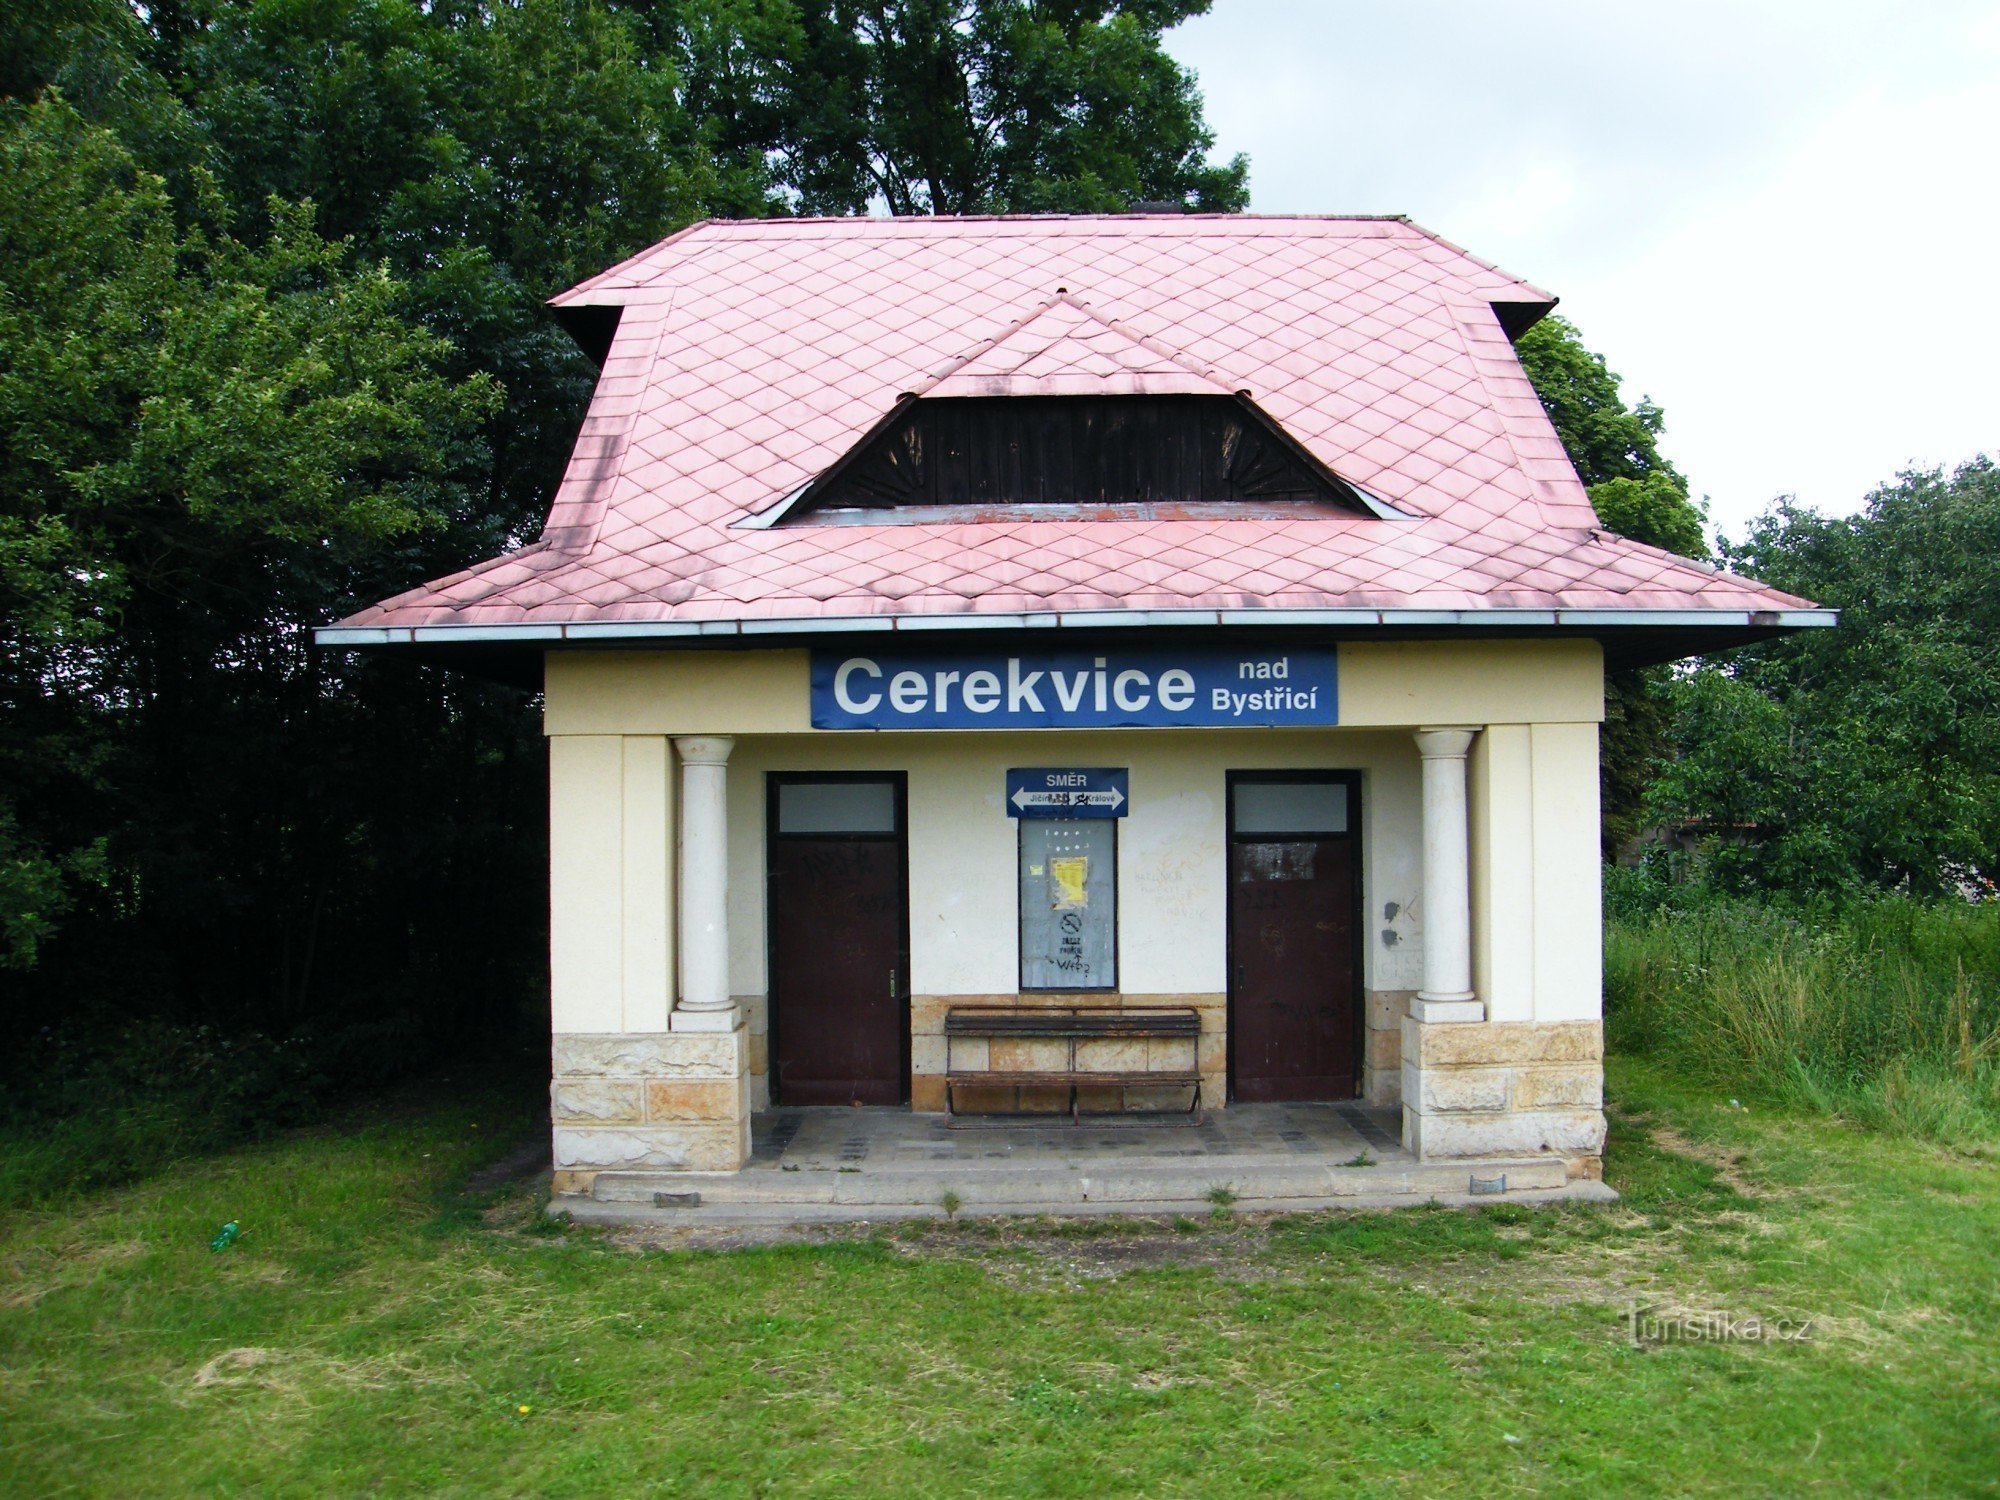 Cerekvice nad Bystřicí - przystanek kolejowy